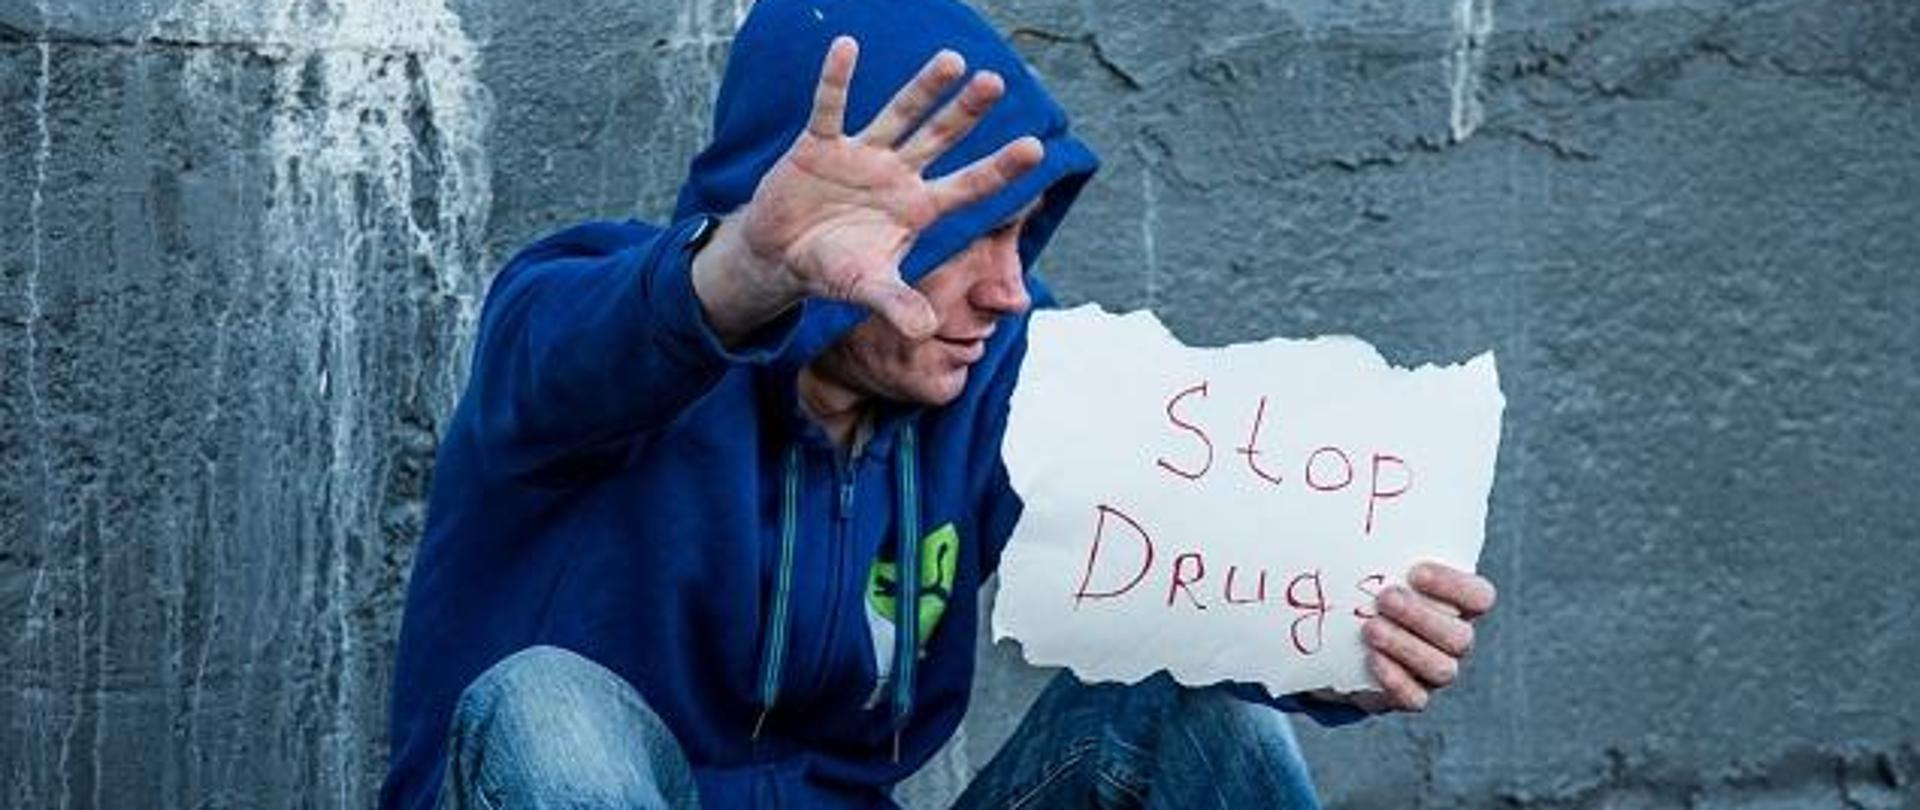 na zdjęciu widać mężczyznę siedzącego na ziemi, w bluzie sportowej, z kapturem na głowie, trzymającego w ręce kartkę z napisem STOP DRUGS